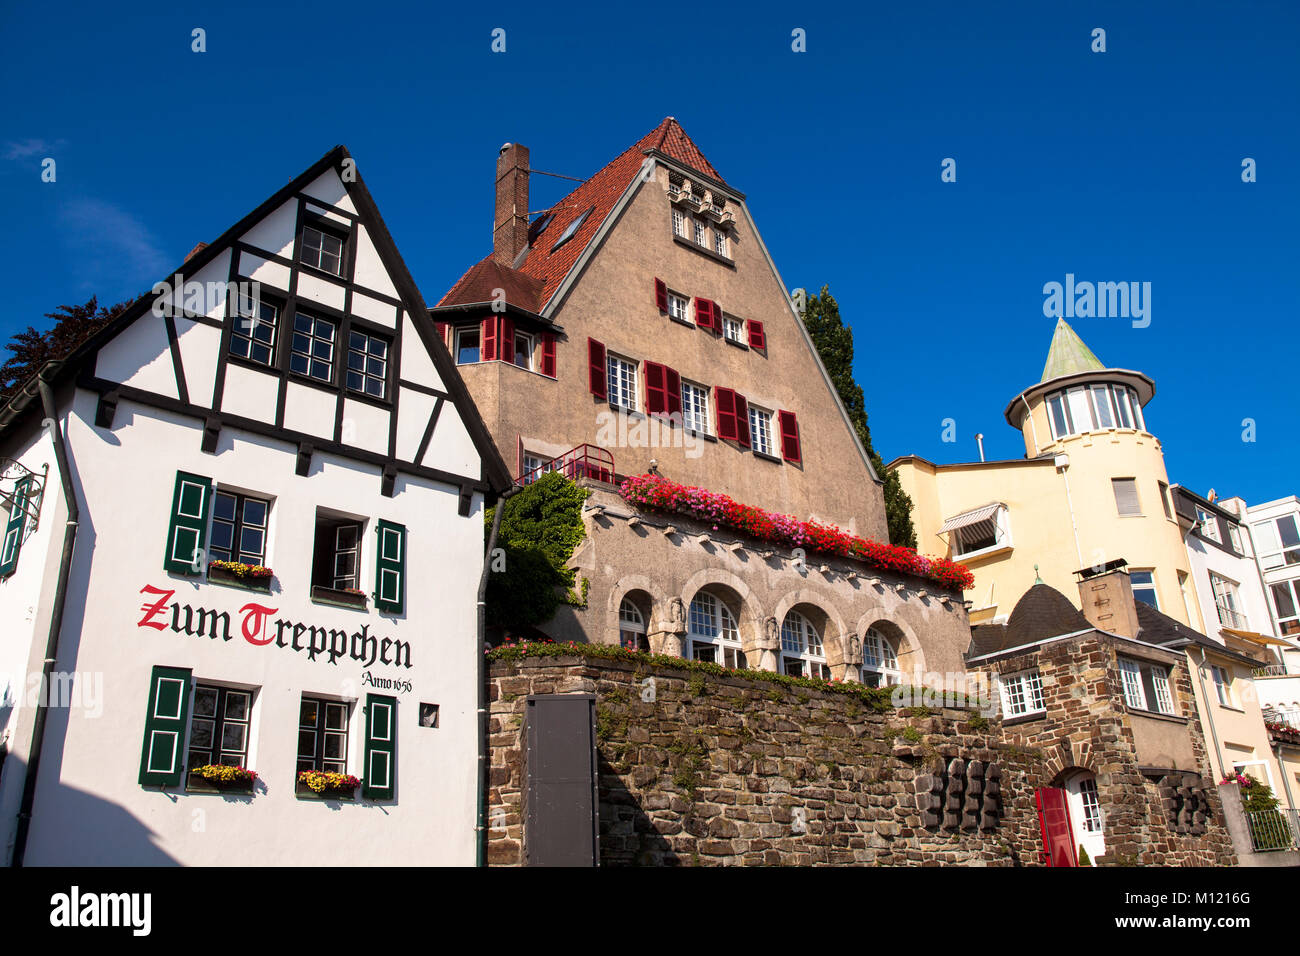 Allemagne, Cologne, maisons sur les rives du Rhin dans le quartier de Rodenkirchen, à gauche le restaurant traditionnel 'Zum Treppchen' Deutsch Banque D'Images